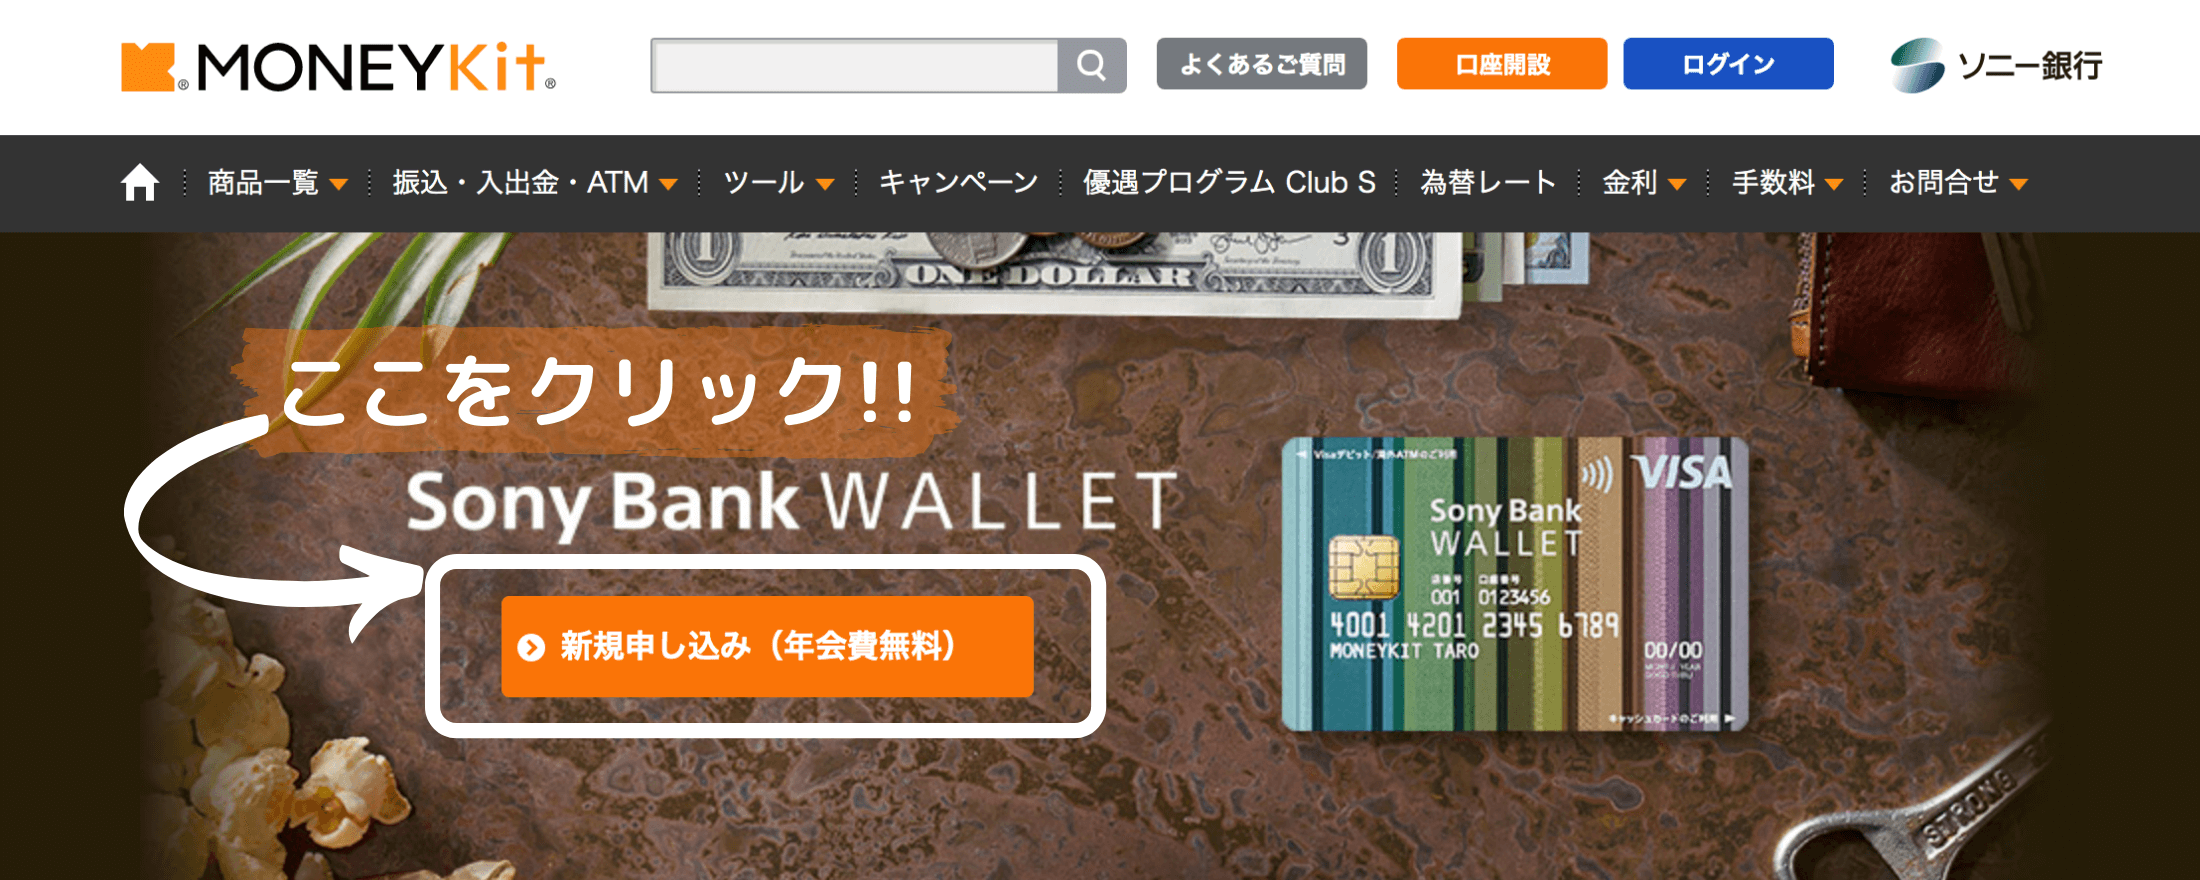 ソニー銀行 MONEY Kit HP